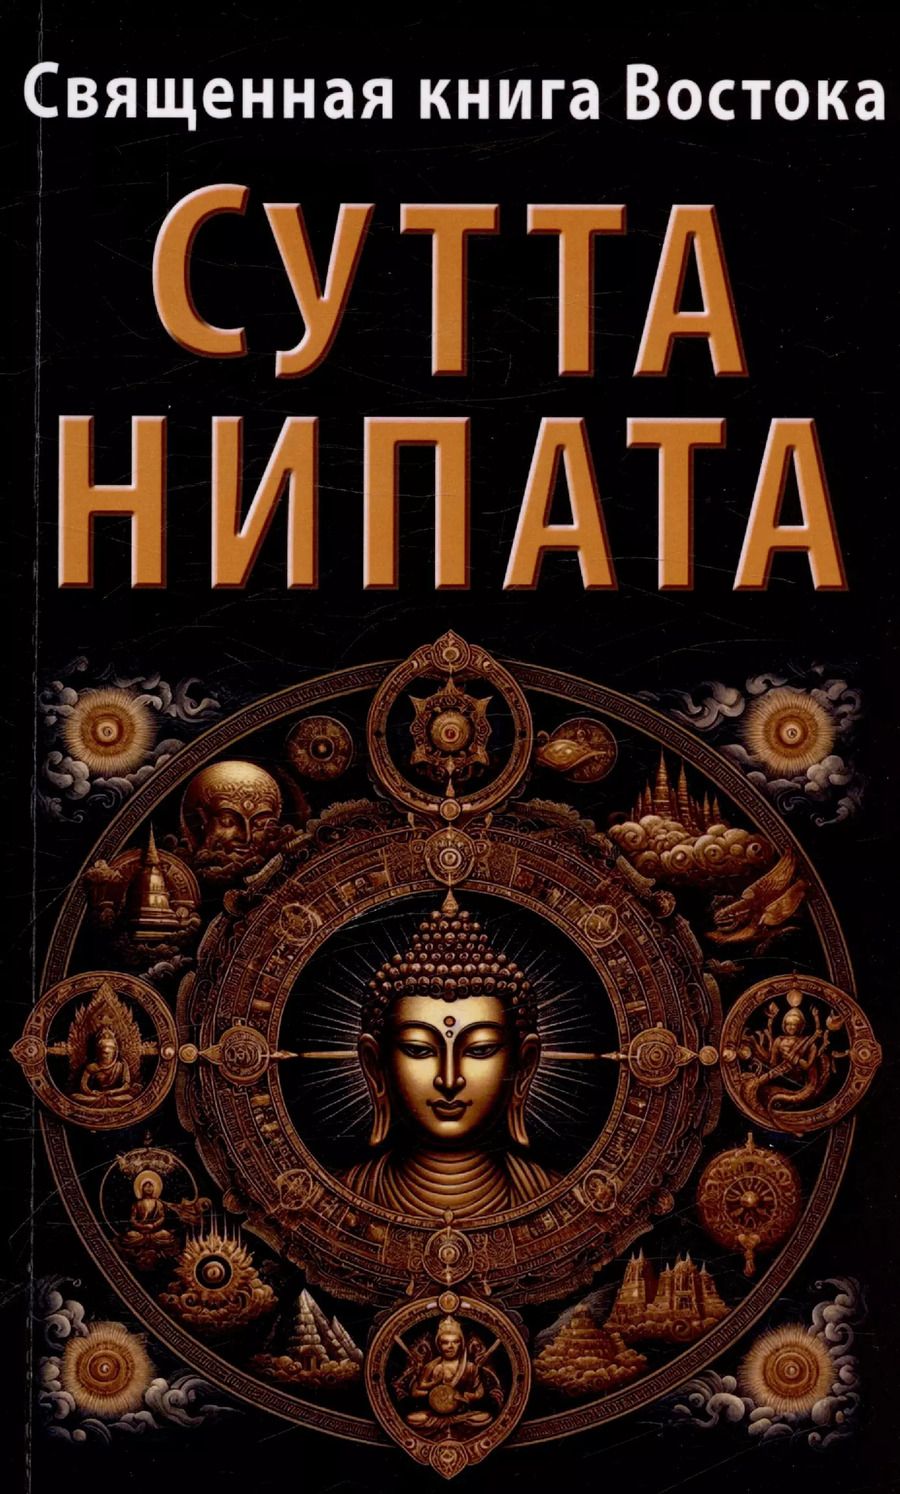 Обложка книги "Священная книга Востока. Сутта-Нипата"